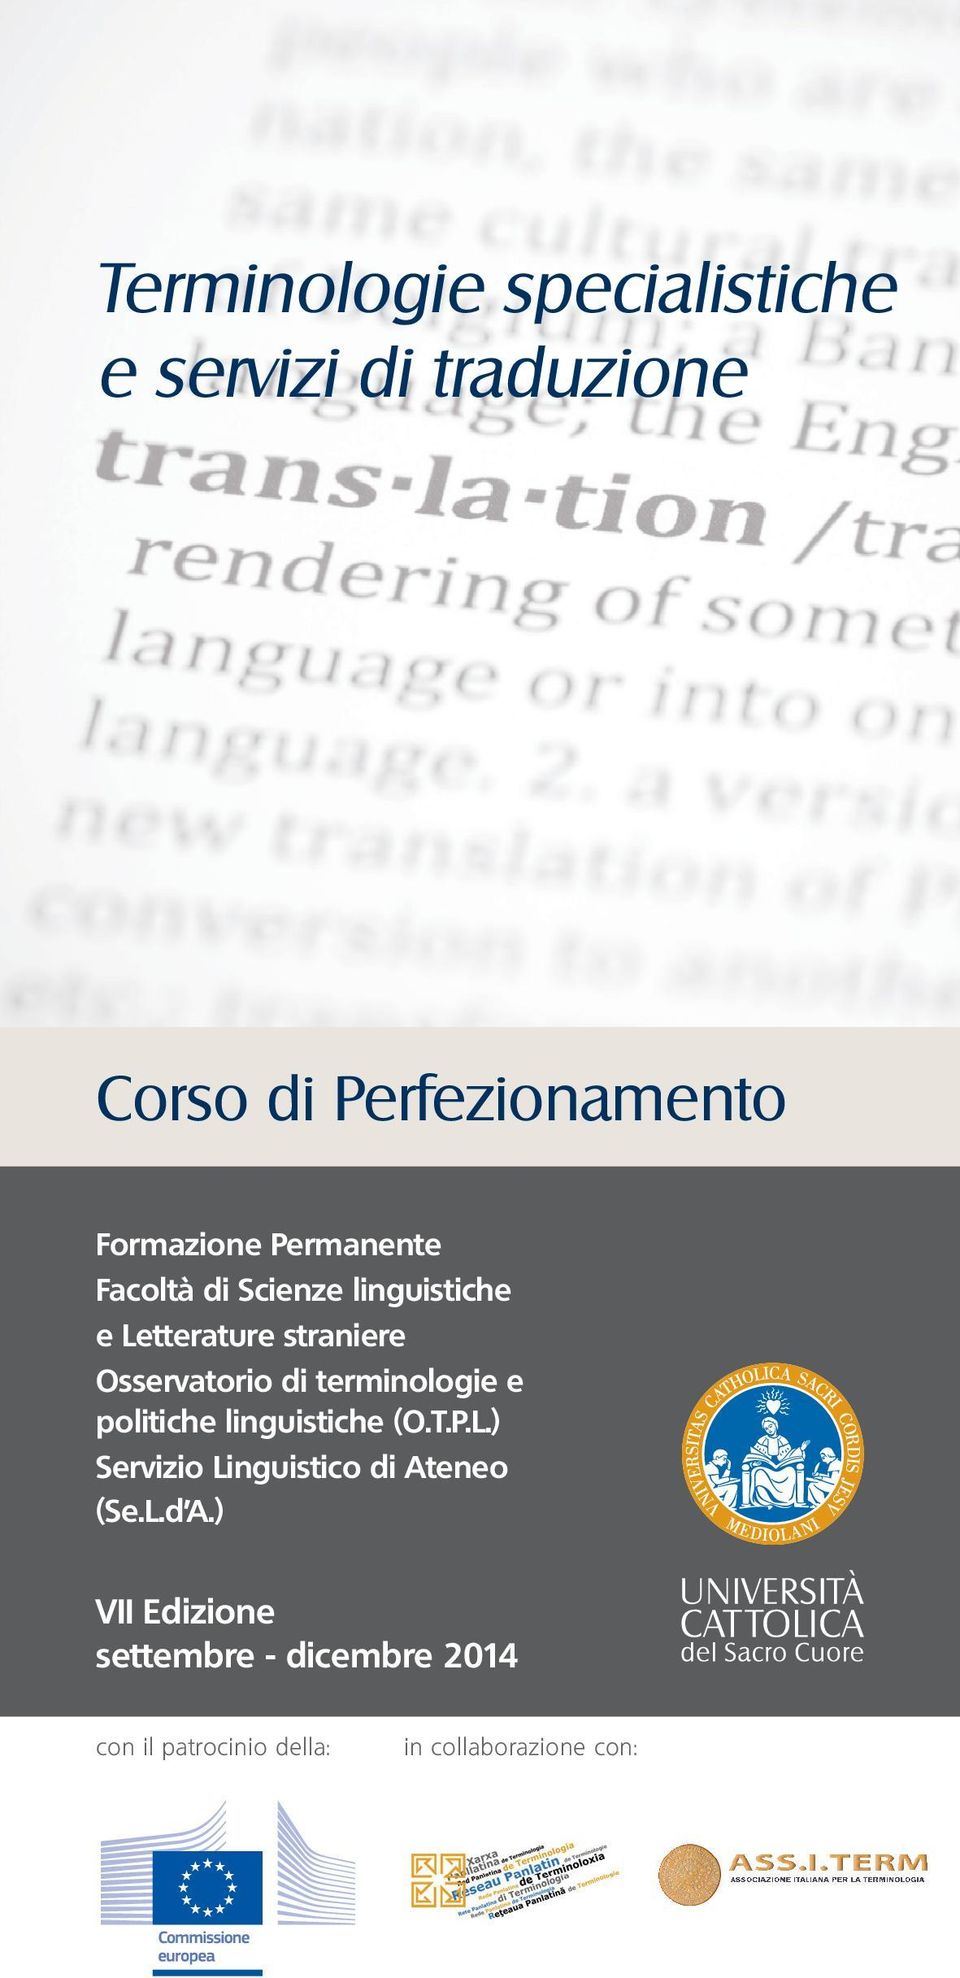 terminologie e politiche linguistiche (O.T.P.L.) Servizio Linguistico di Ateneo (Se.L.d A.